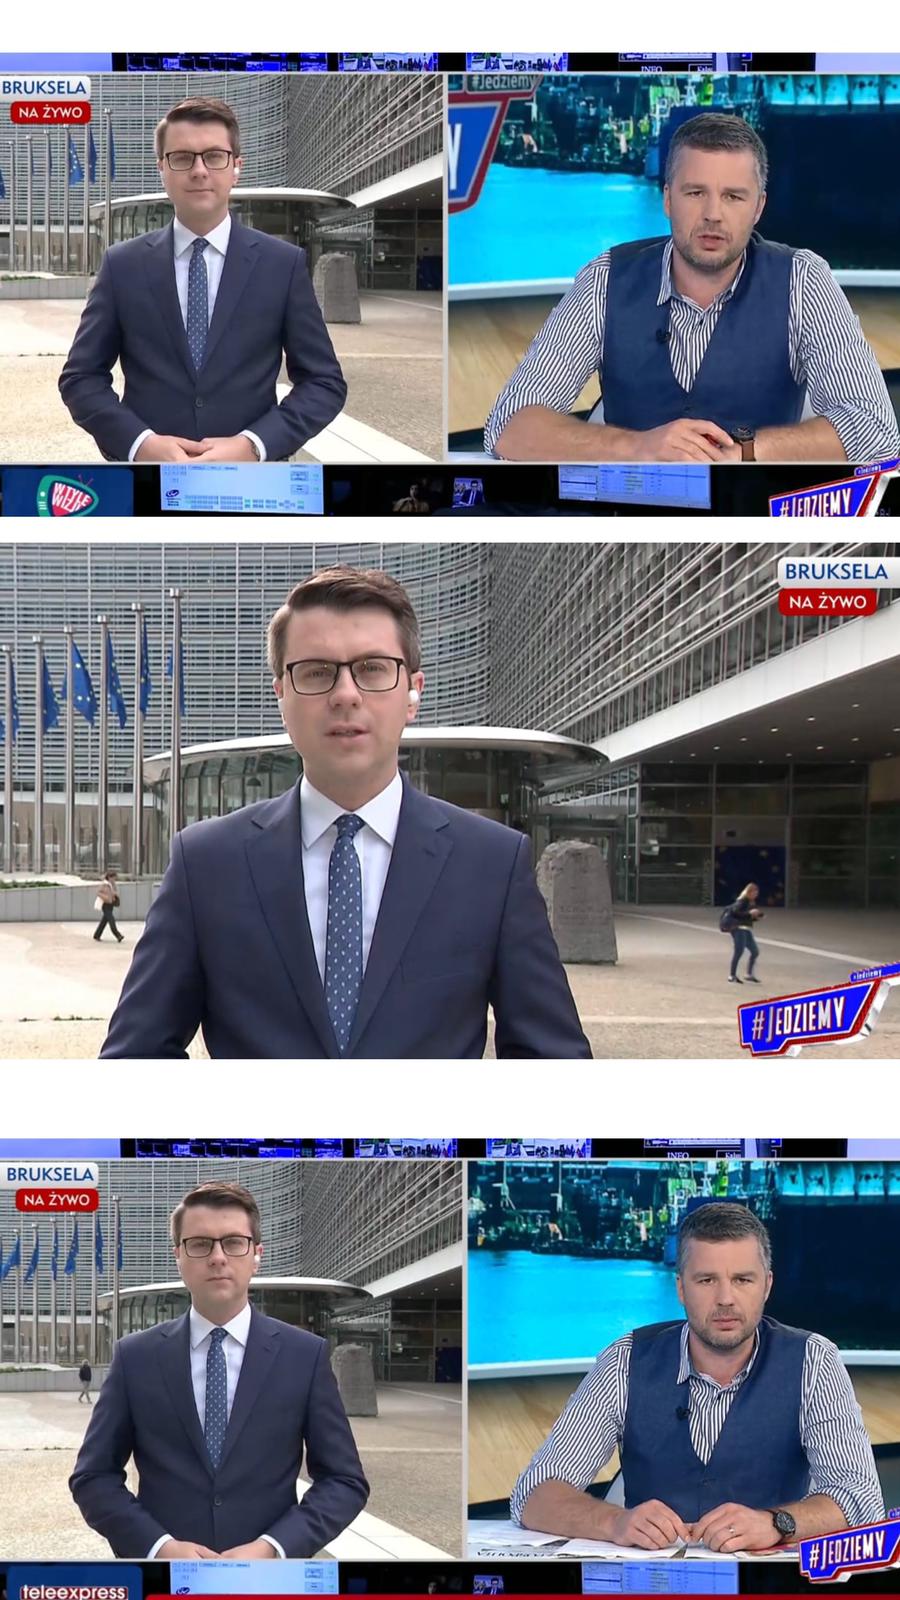 Dziś rano rzecznik rządu Piotr Müller wziął udział w porannym programie TVP Info #Jedziemy przed siedzibą Rady Europejskiej.